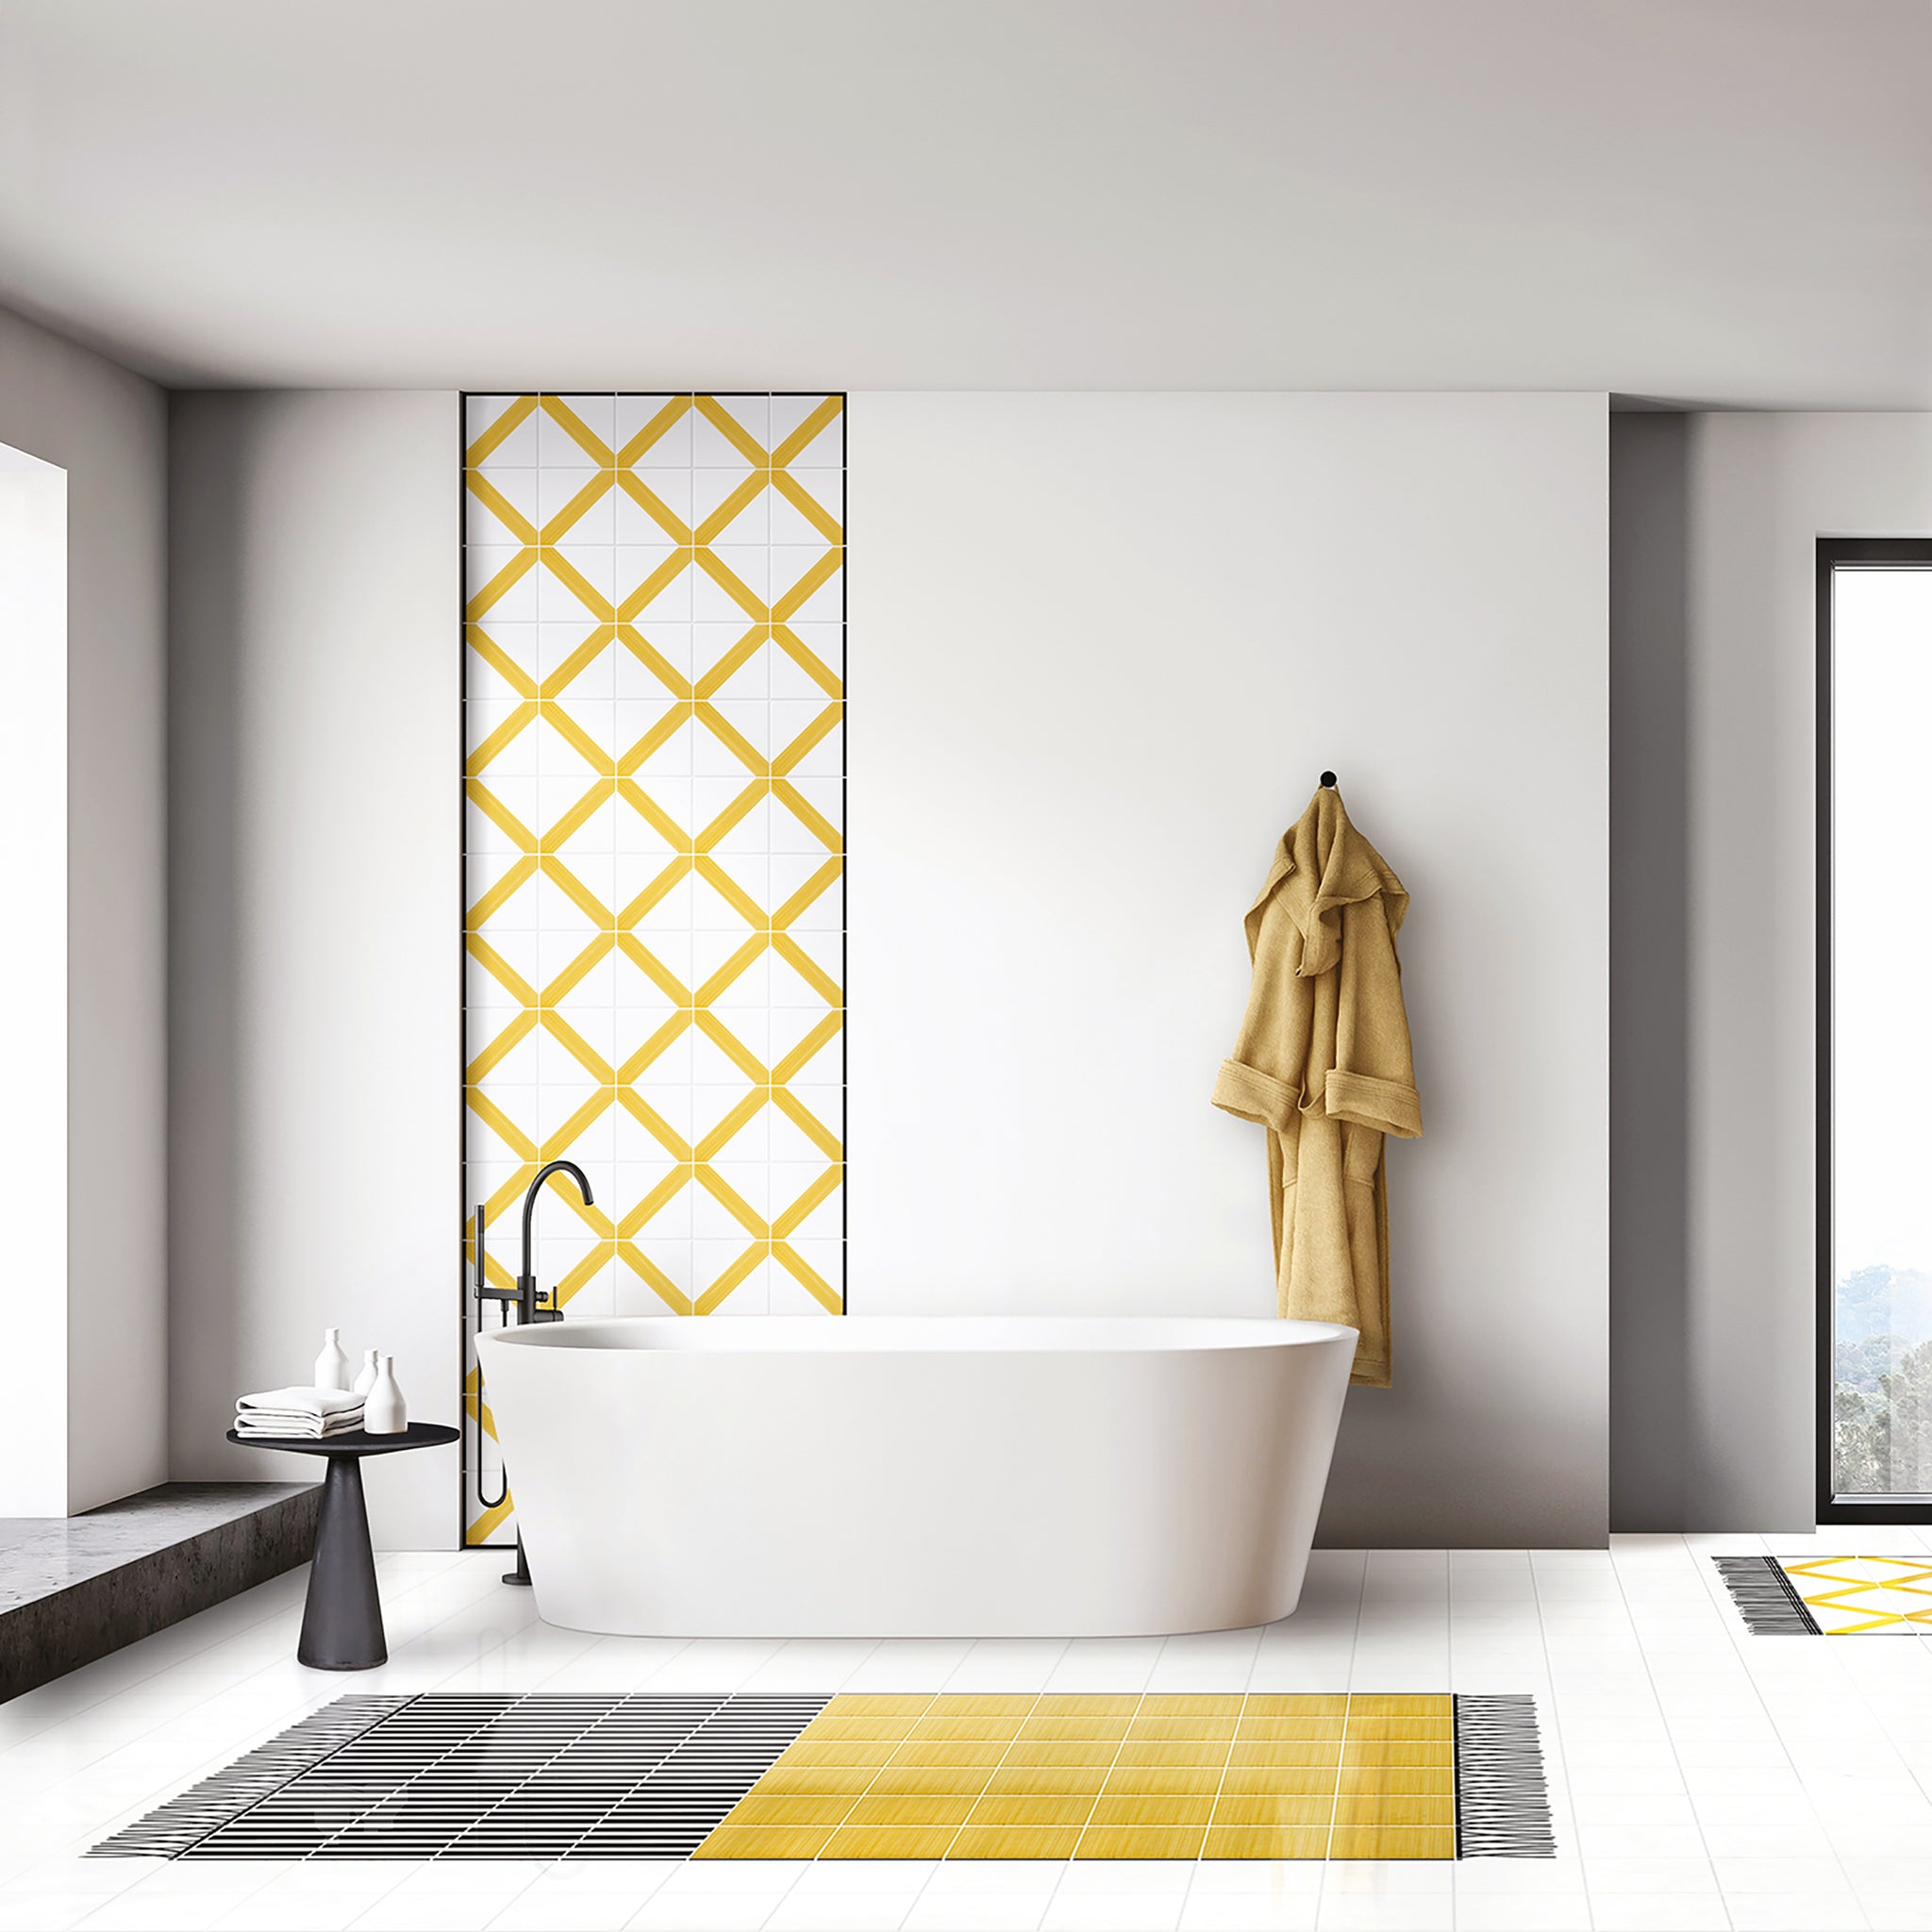 Carpet Yellow and Striped Ceramic Composition by Giuliano Andrea dell’Uva 220 x 140 - Alternative view 3